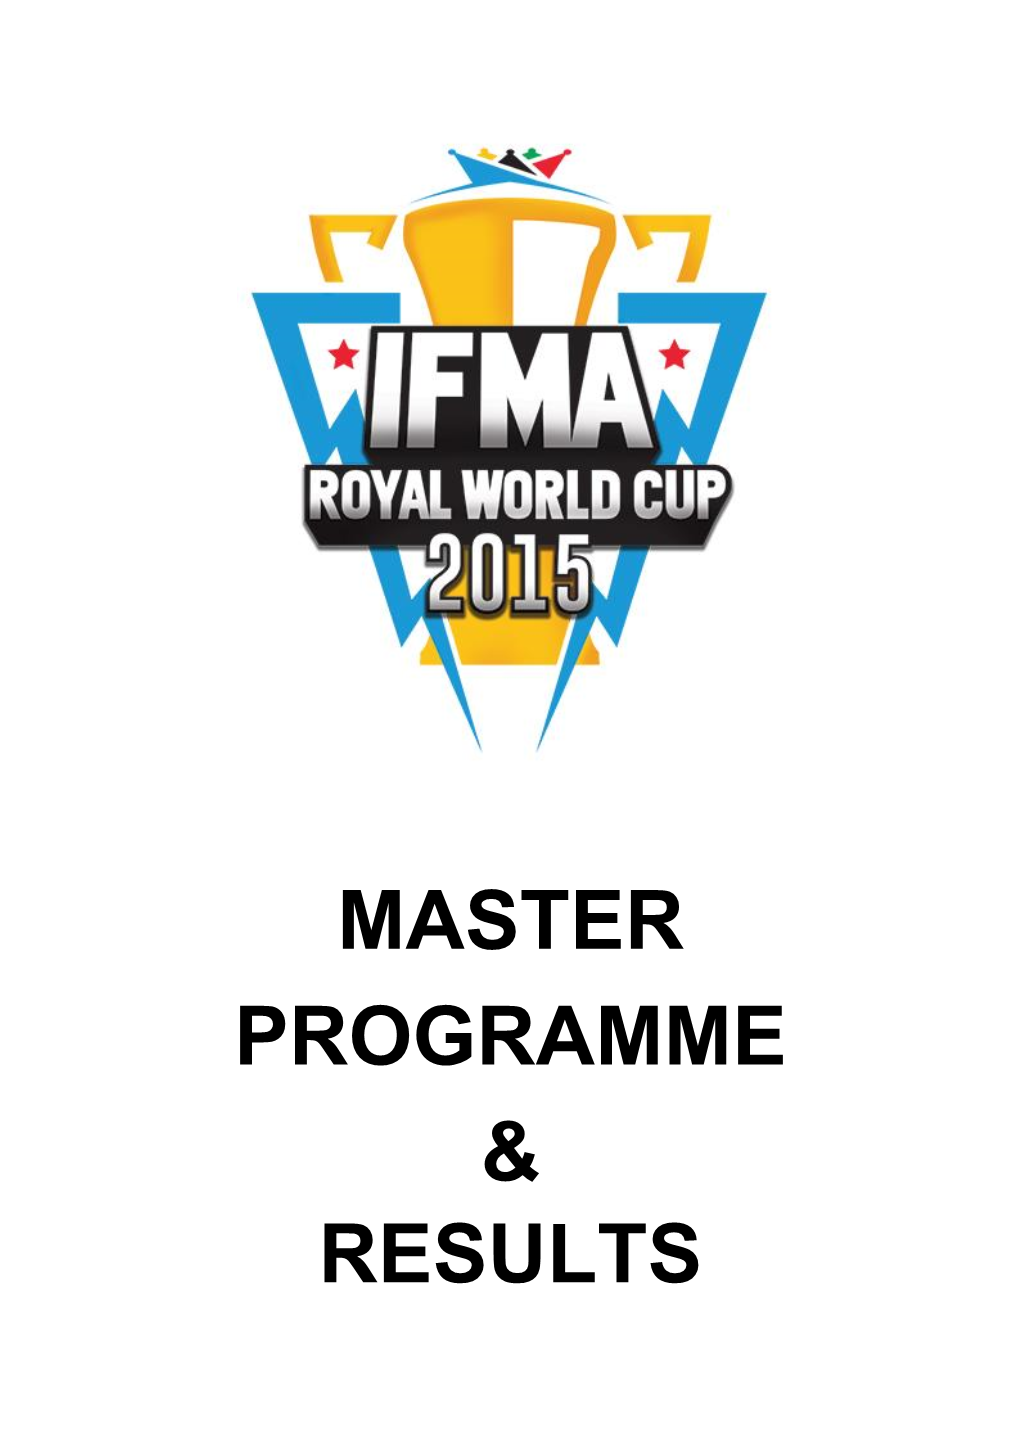 IFMA ROYAL WORLD CUP 2015 August 13 - 23 2015 Bangkok,Thailand